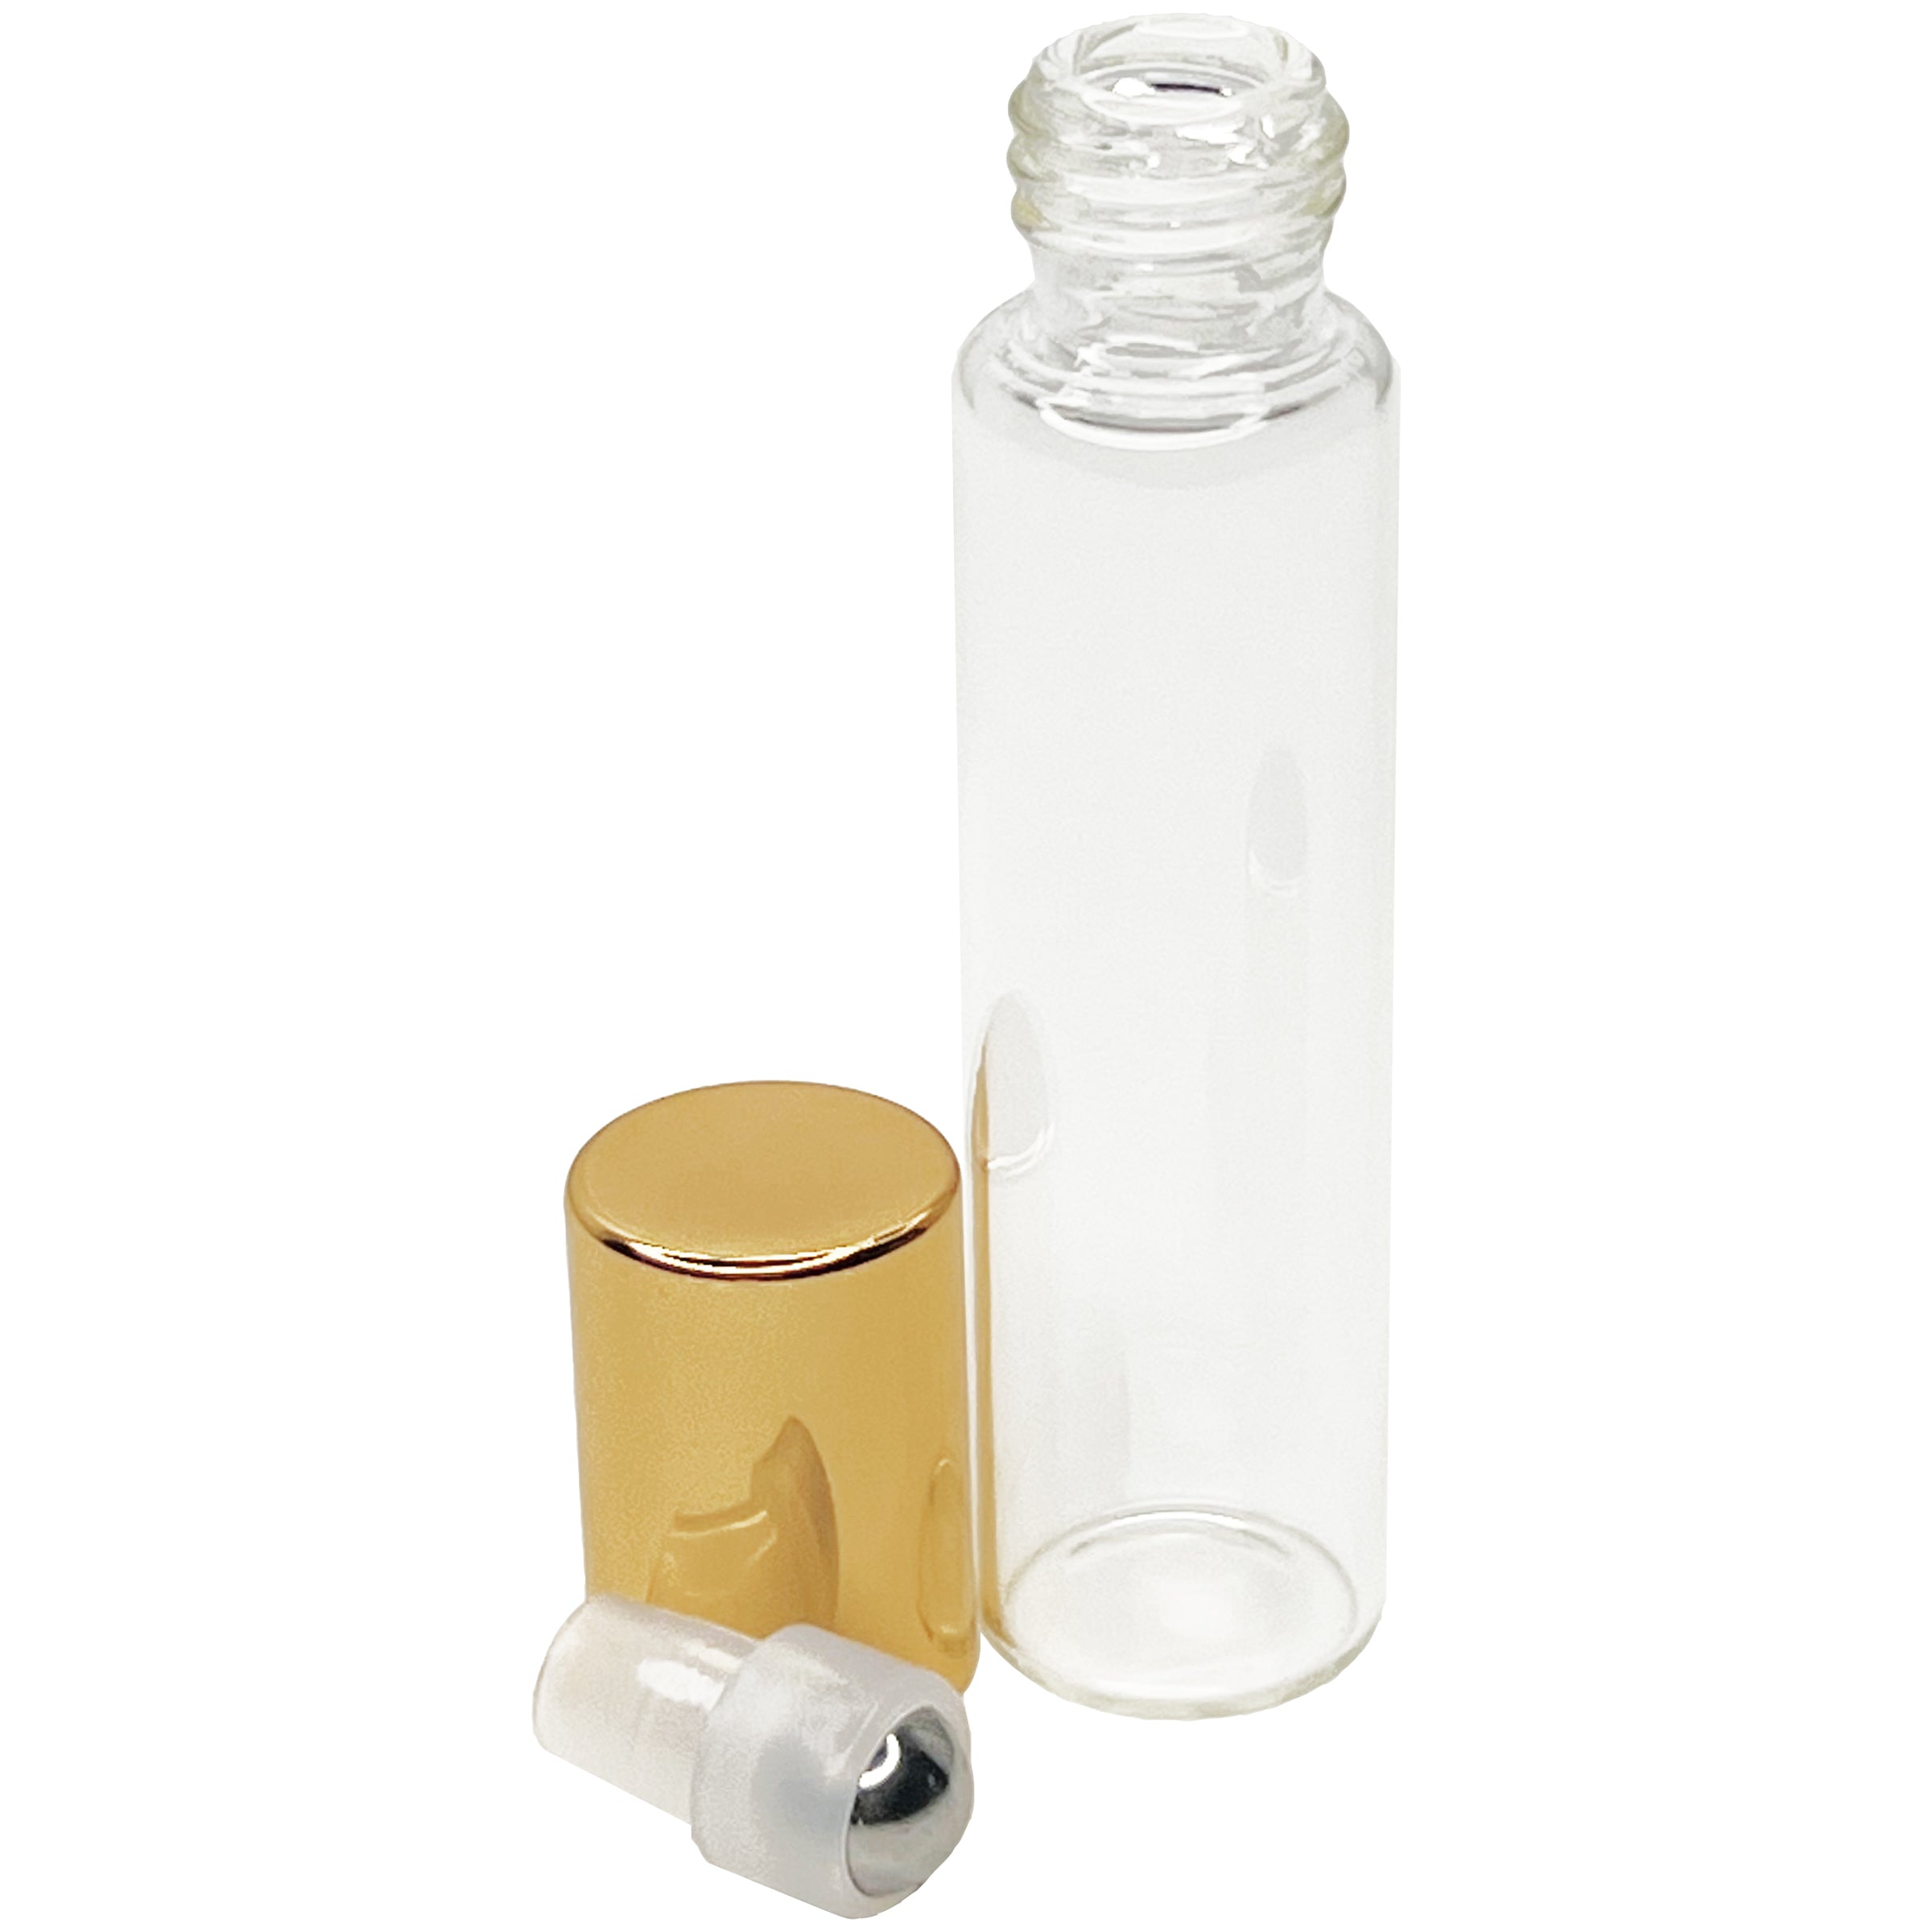 10ml 0.33oz glass tube roll on roller bottles for perfume oils